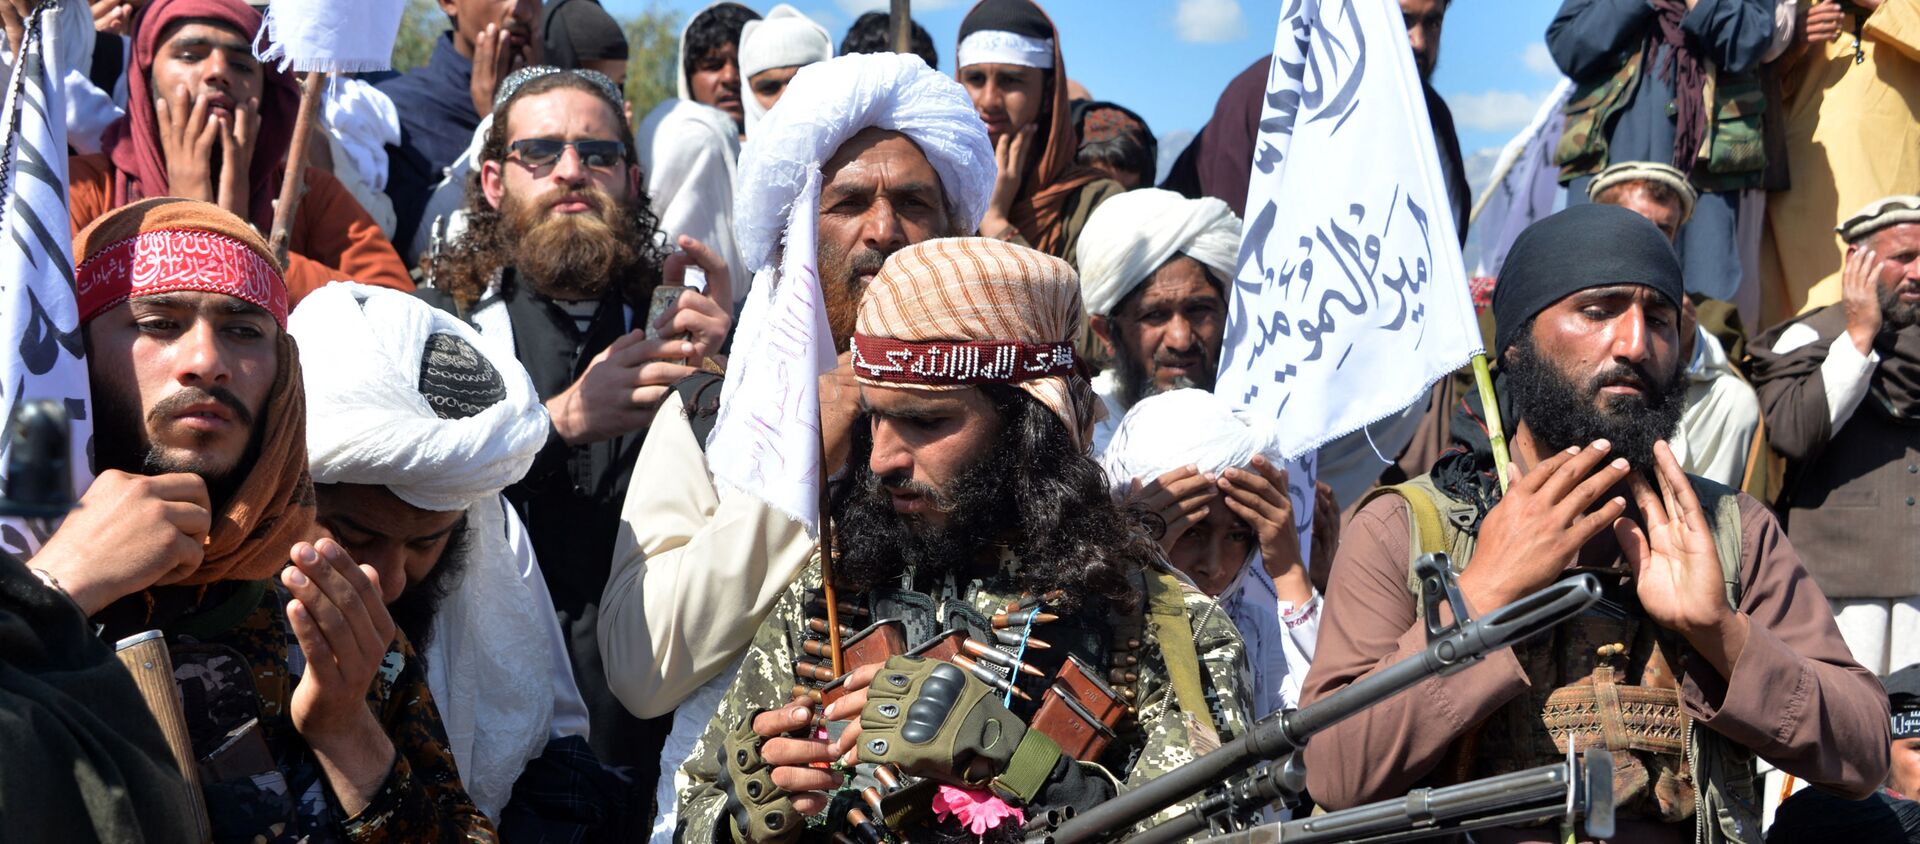 Các chiến binh Taliban Afghanistan và dân làng tham dự một cuộc tụ họp khi họ ăn mừng thỏa thuận hòa bình và chiến thắng của họ trong cuộc xung đột Afghanistan với Mỹ ở Afghanistan, tại huyện Alingar của tỉnh Laghman vào ngày 2 tháng 3 năm 2020 - Sputnik Việt Nam, 1920, 17.08.2021